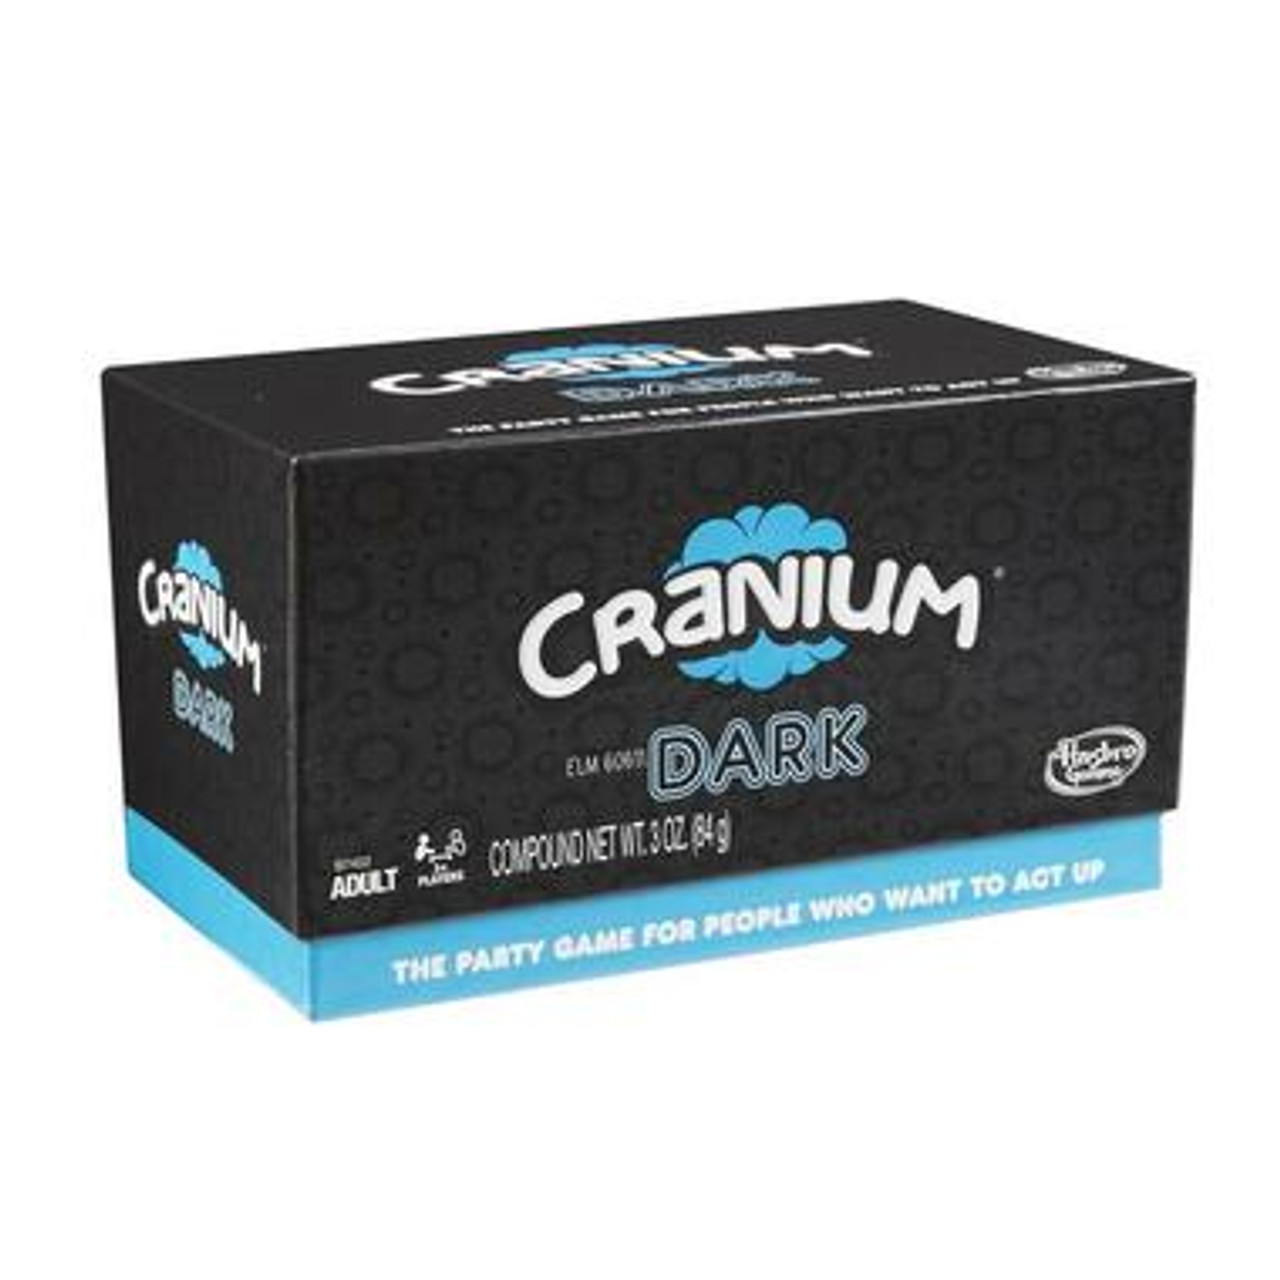 Cranium Board Game with Bonus Pack 